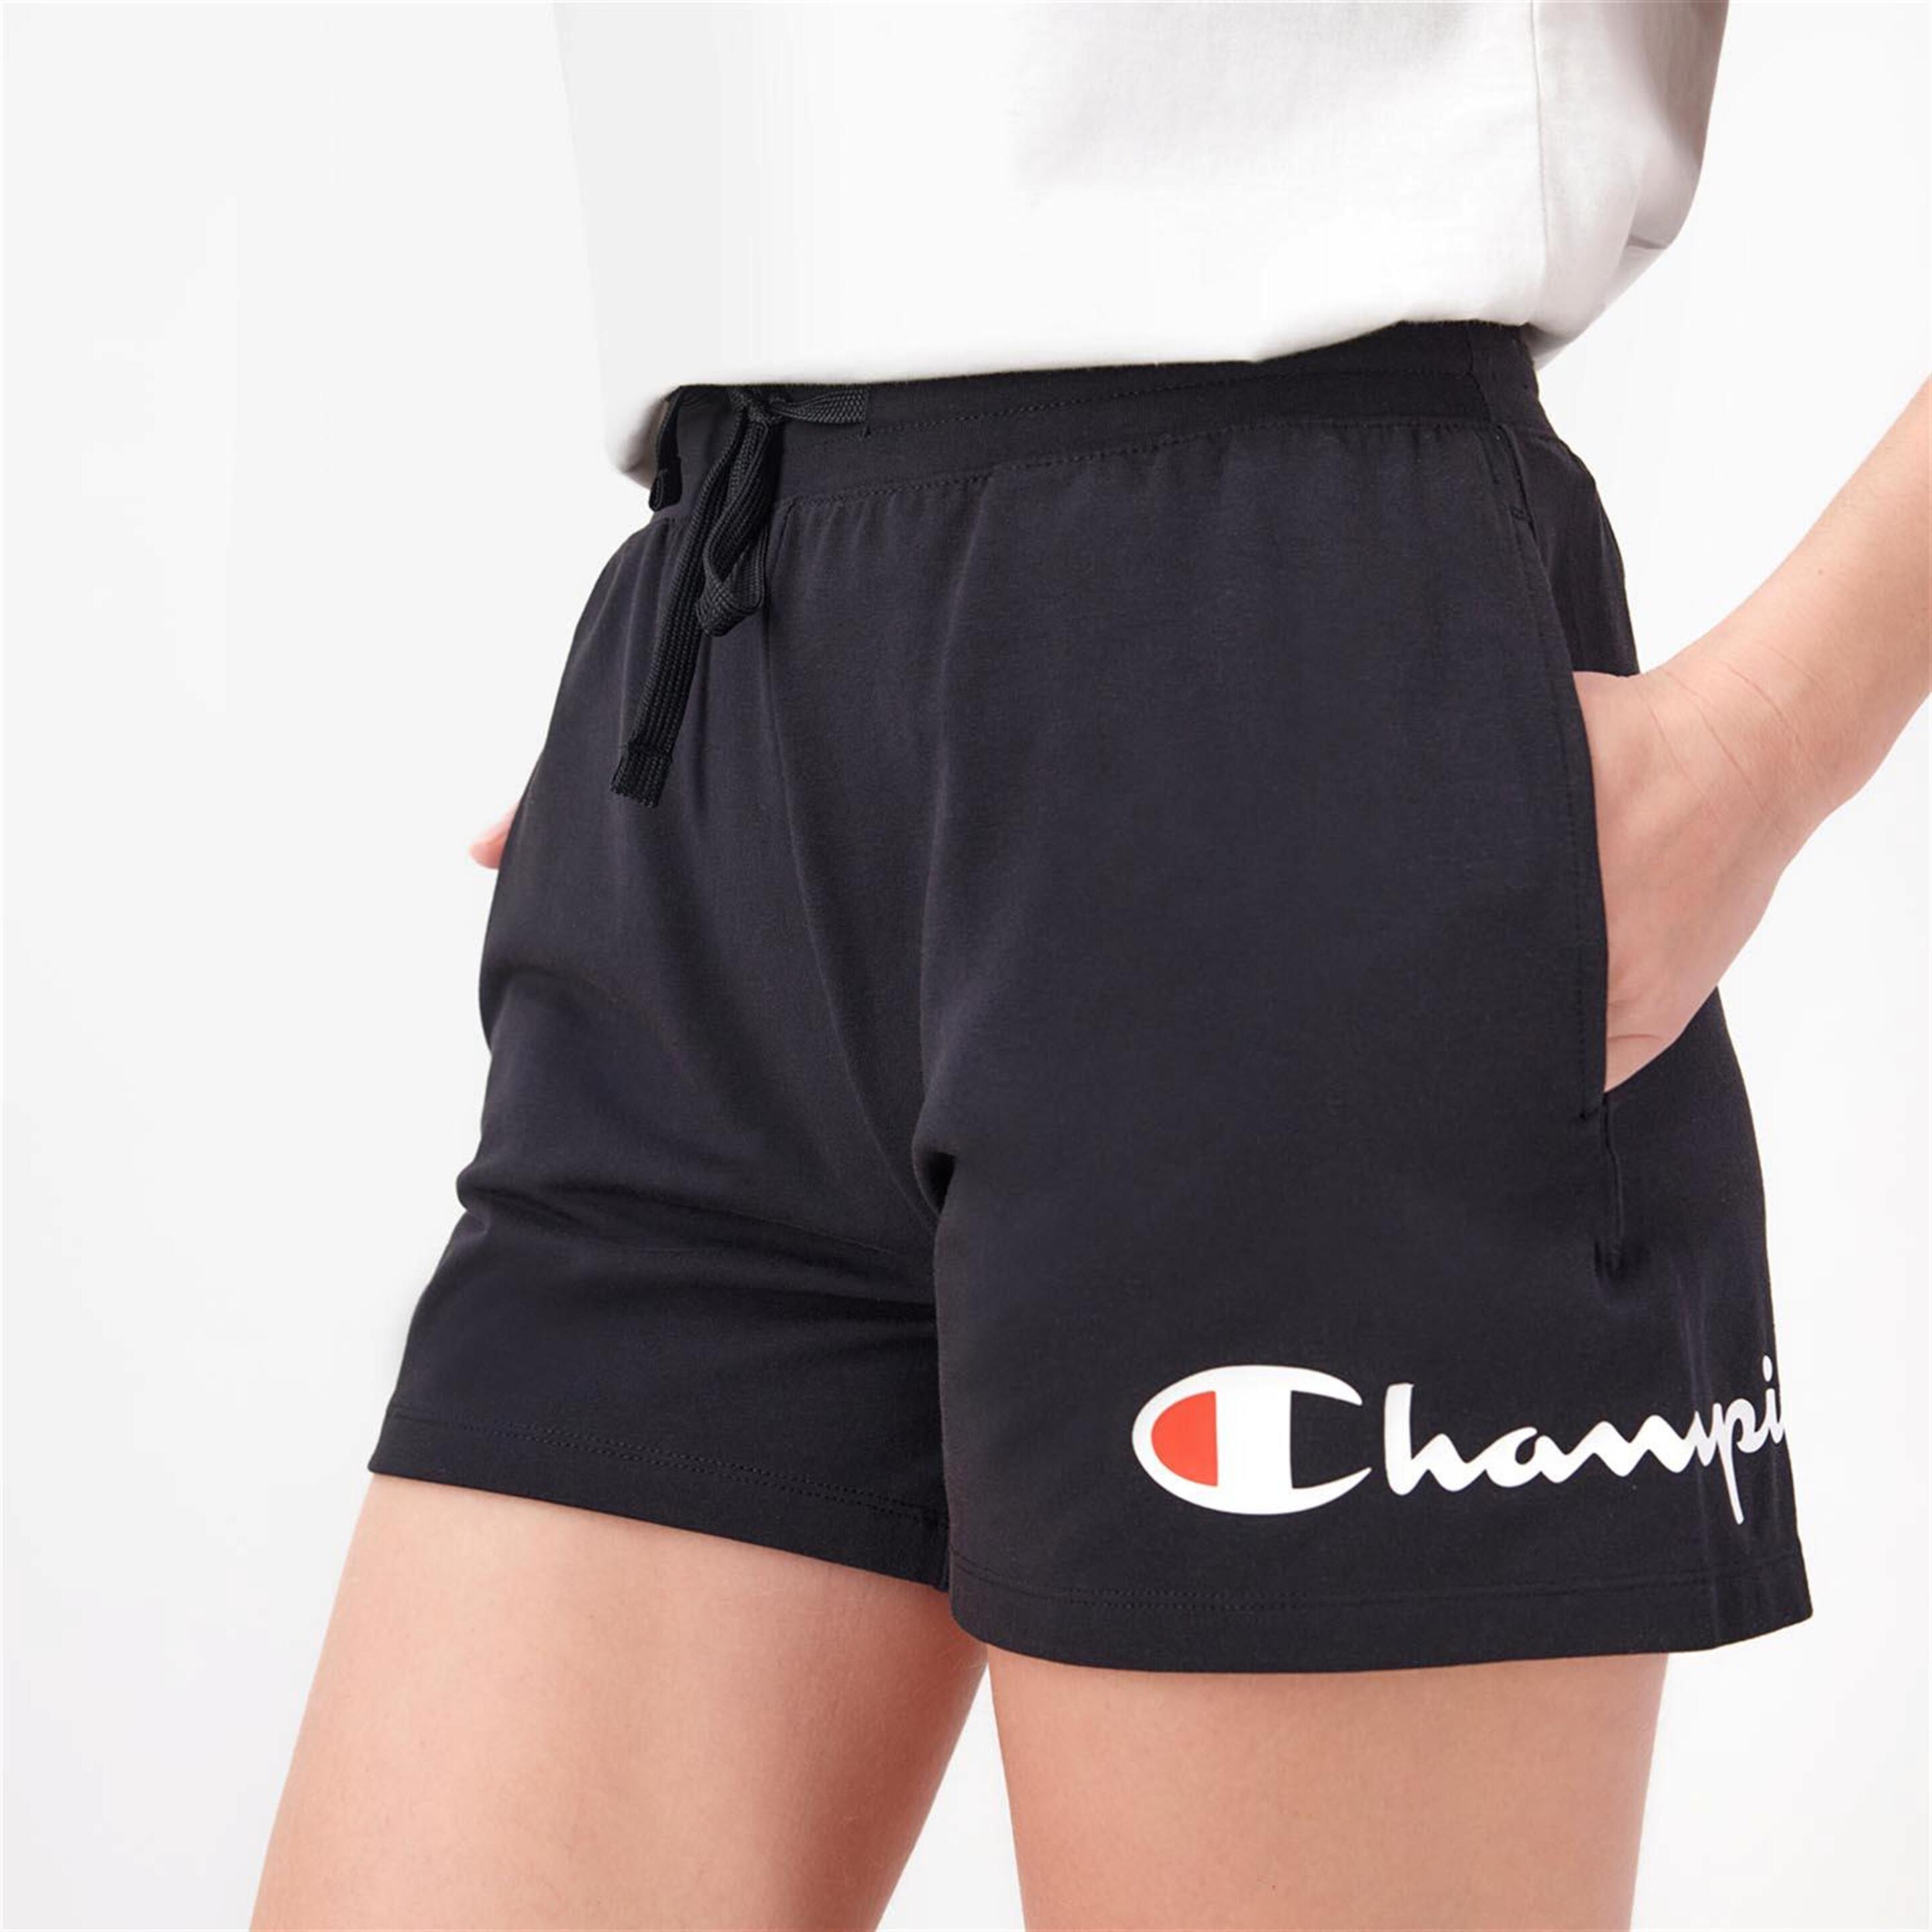 Pantalón Champion - negro - Pantalón Corto Mujer